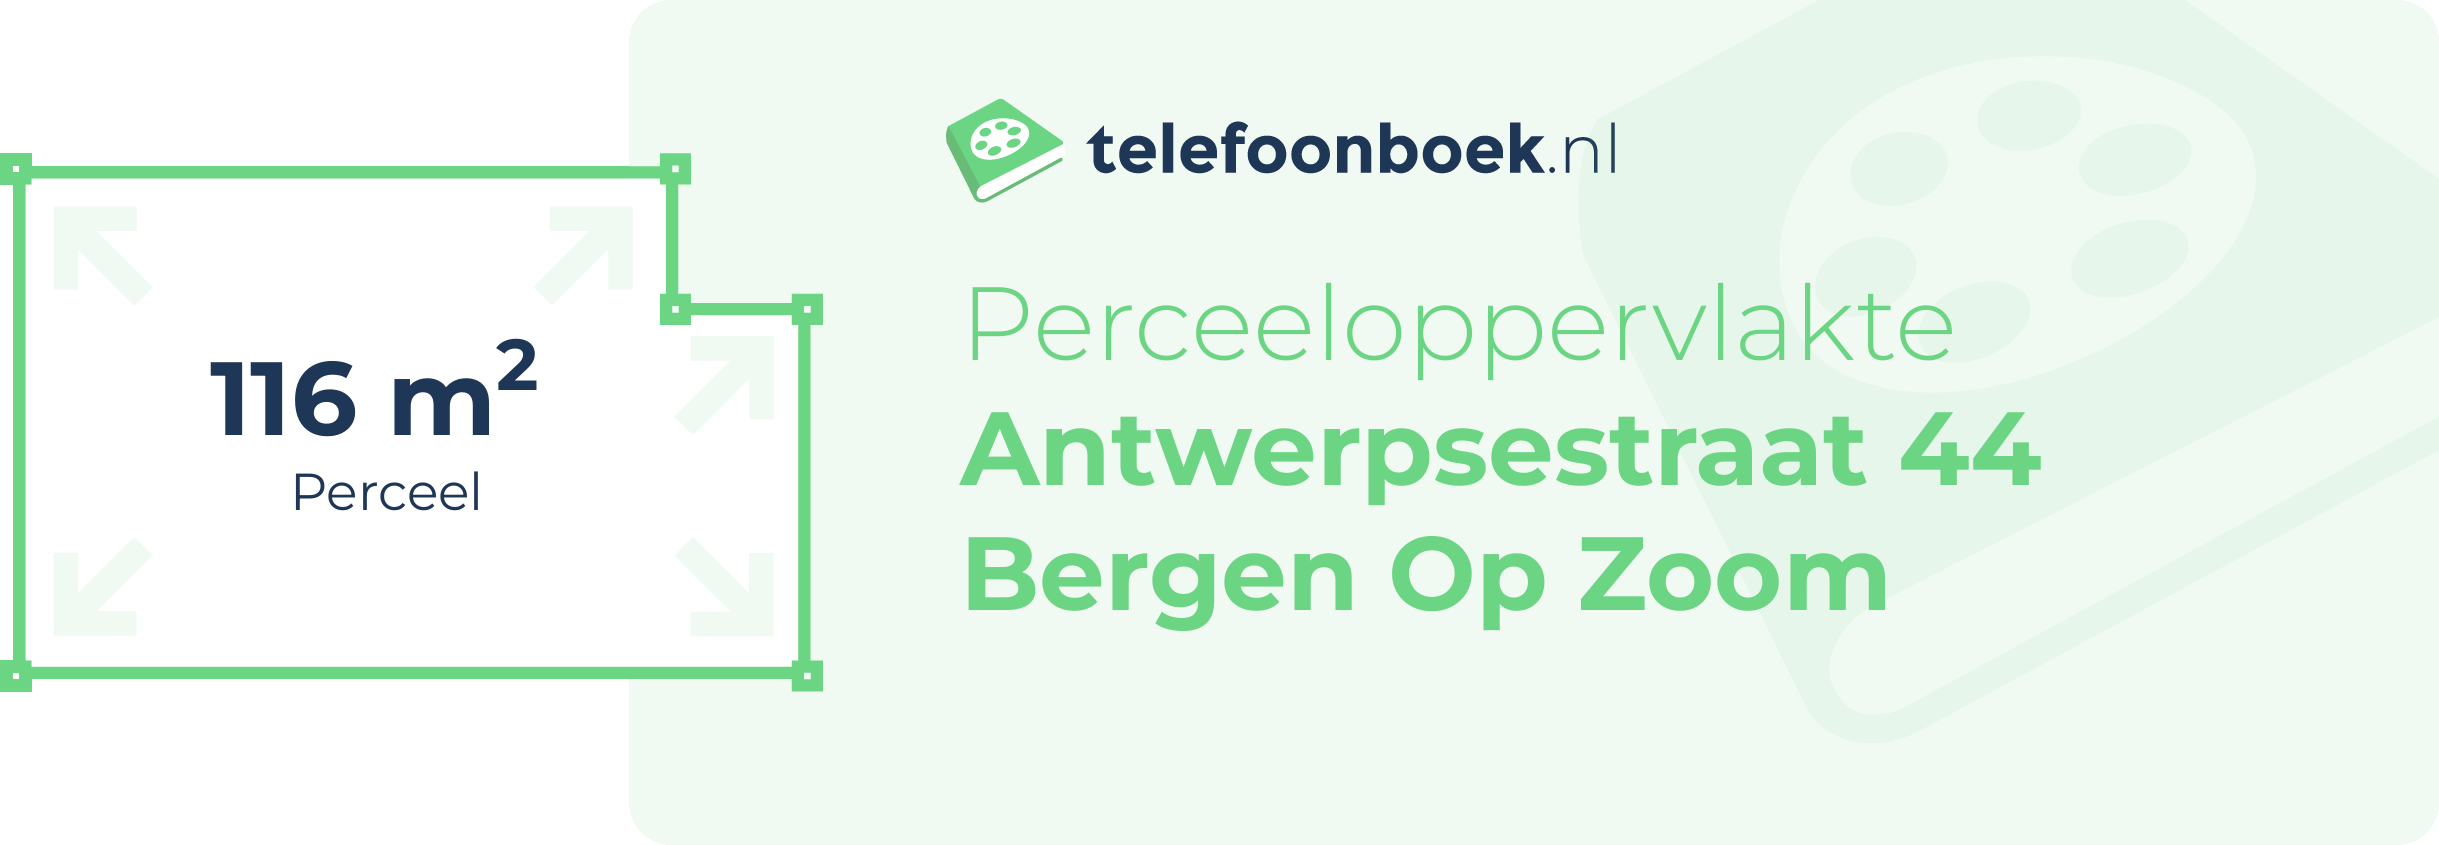 Perceeloppervlakte Antwerpsestraat 44 Bergen Op Zoom